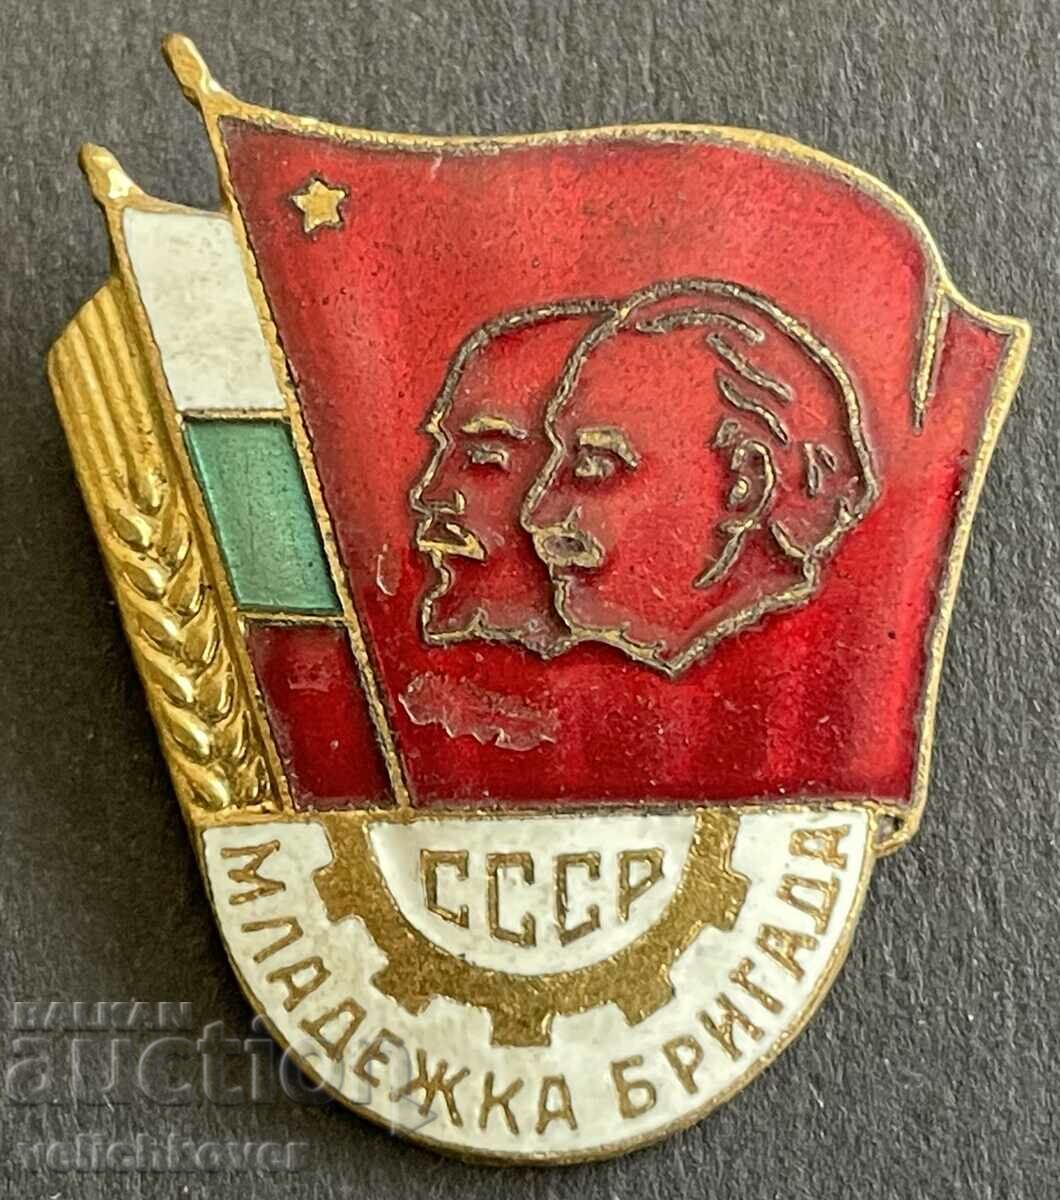 37324 Βουλγαρία υπογραφή Ταξιαρχία Νέων ΕΣΣΔ NRB σμάλτο